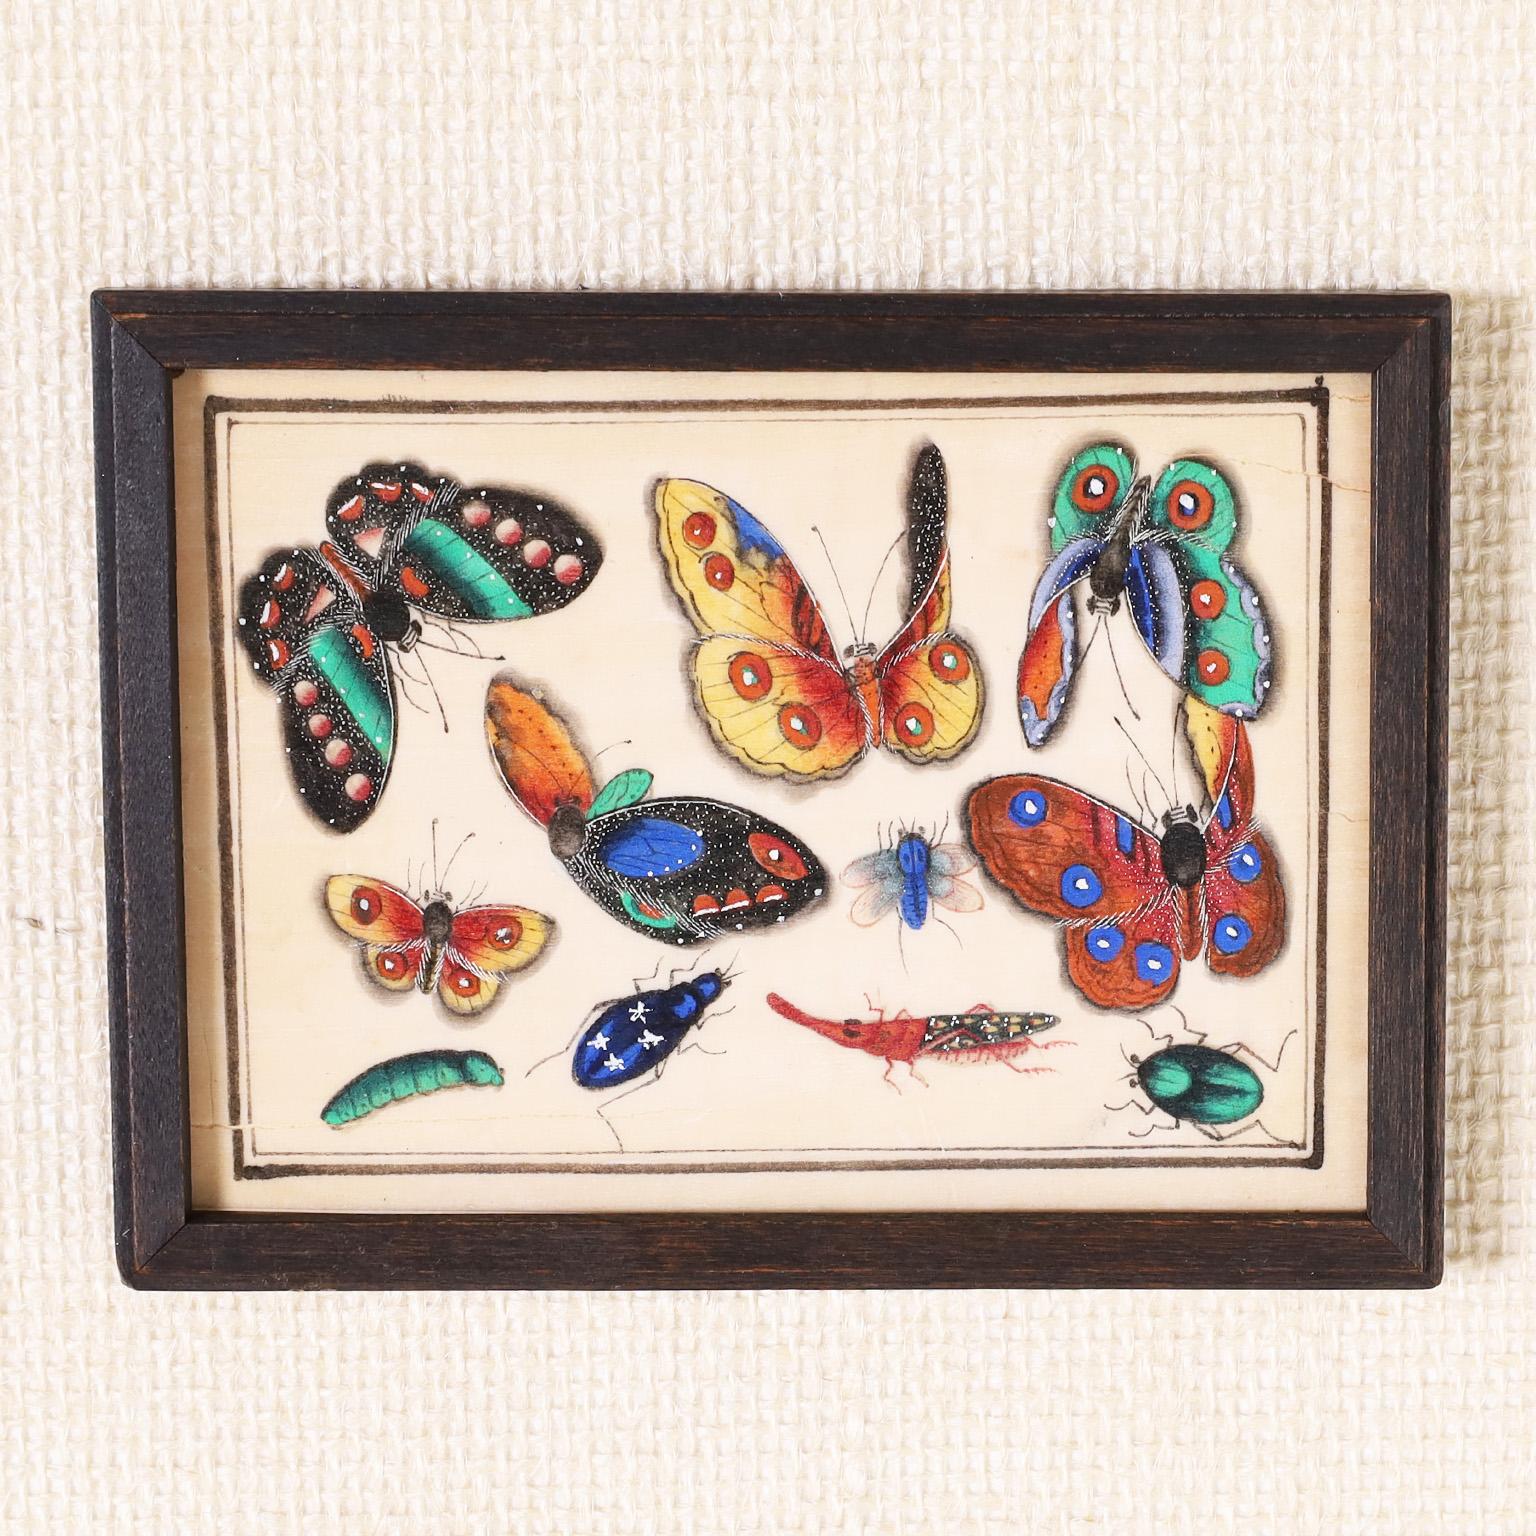 Rare et remarquable ensemble de douze aquarelles chinoises du XIXe siècle sur papier sulfurisé représentant des espèces de papillons de nuit et d'autres insectes assortis, exécutées dans de magnifiques couleurs vives. Présenté sous verre dans un